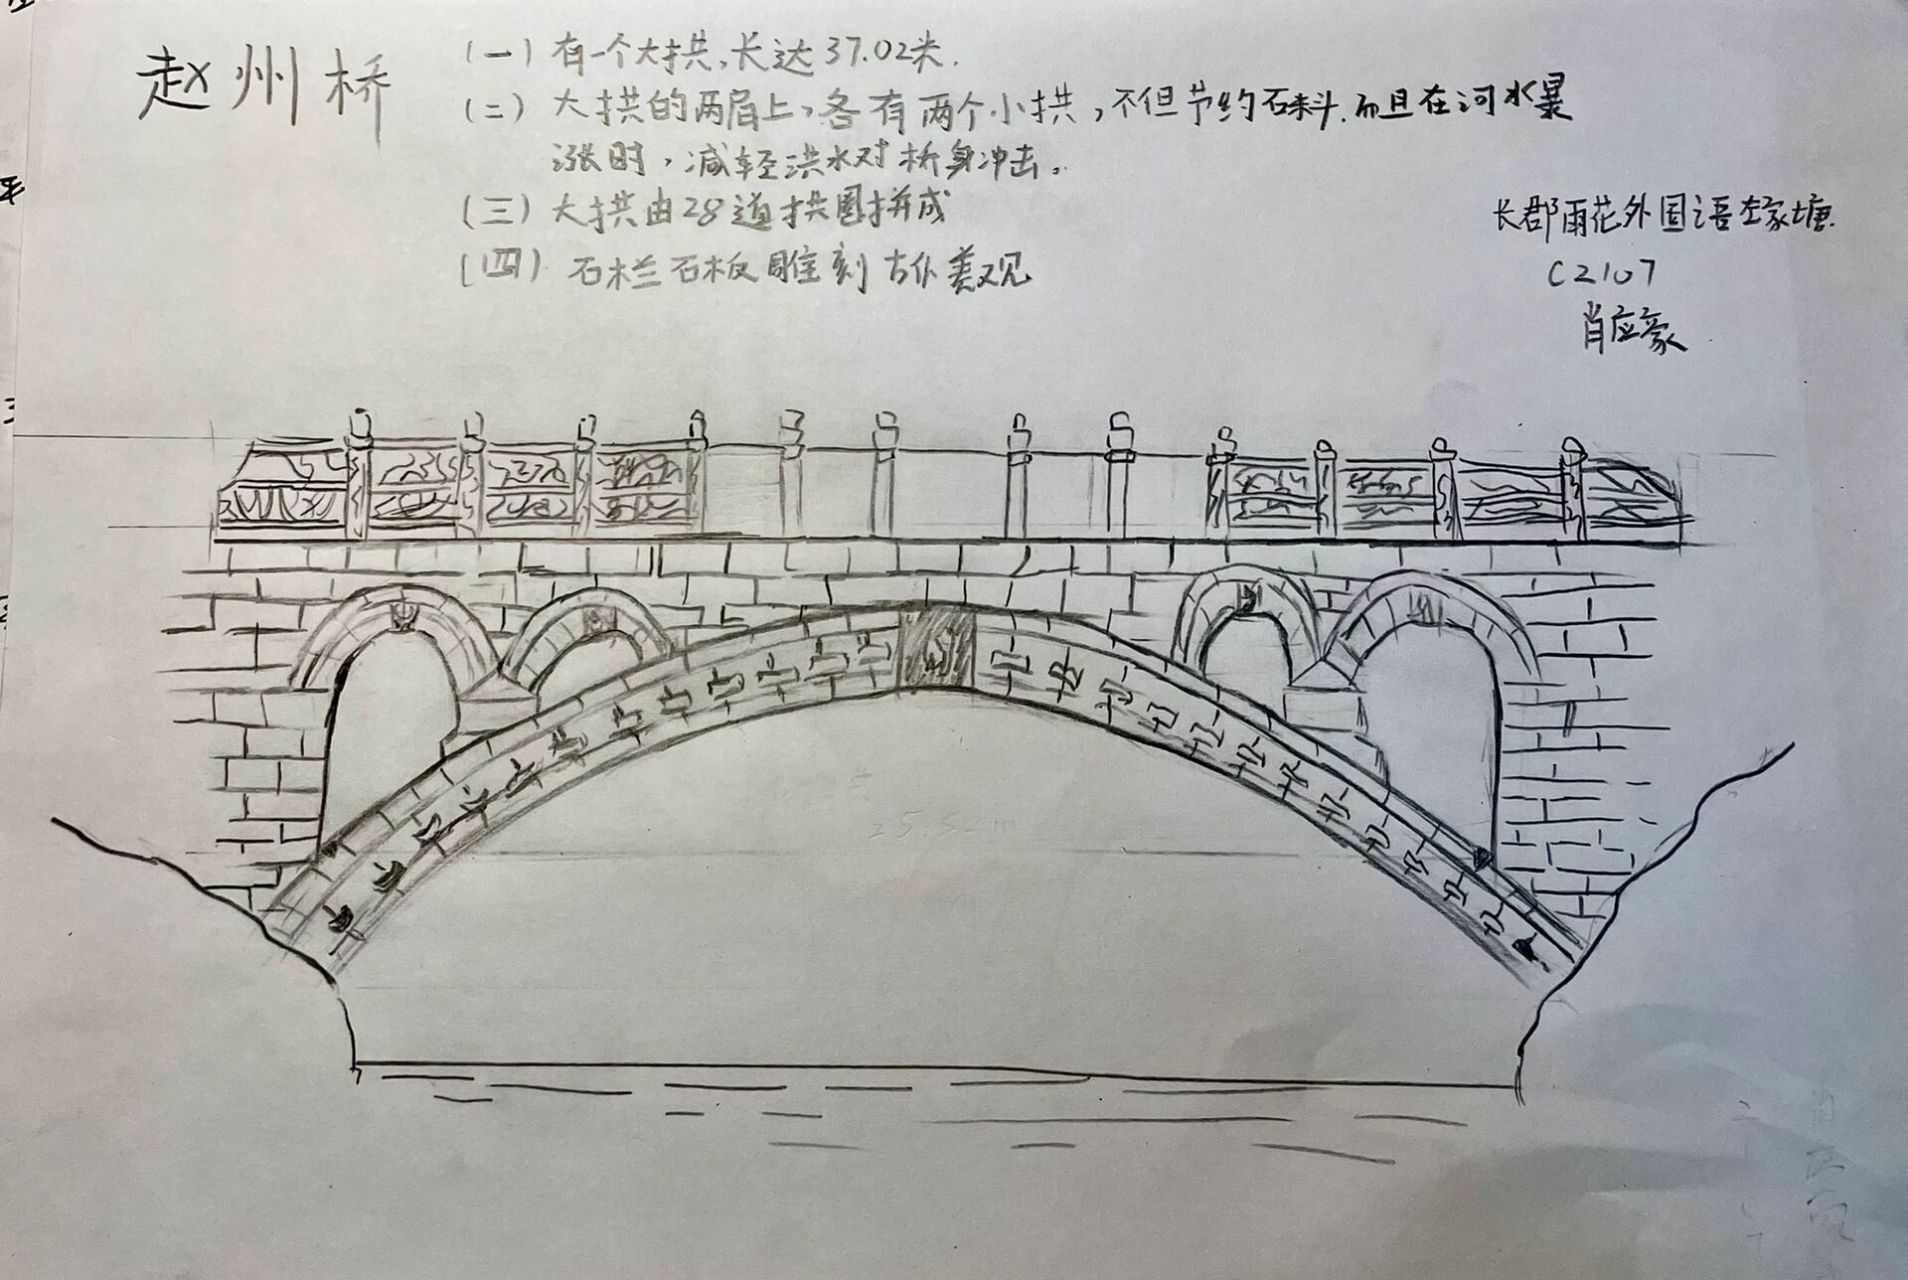 赵州桥手绘简笔图片